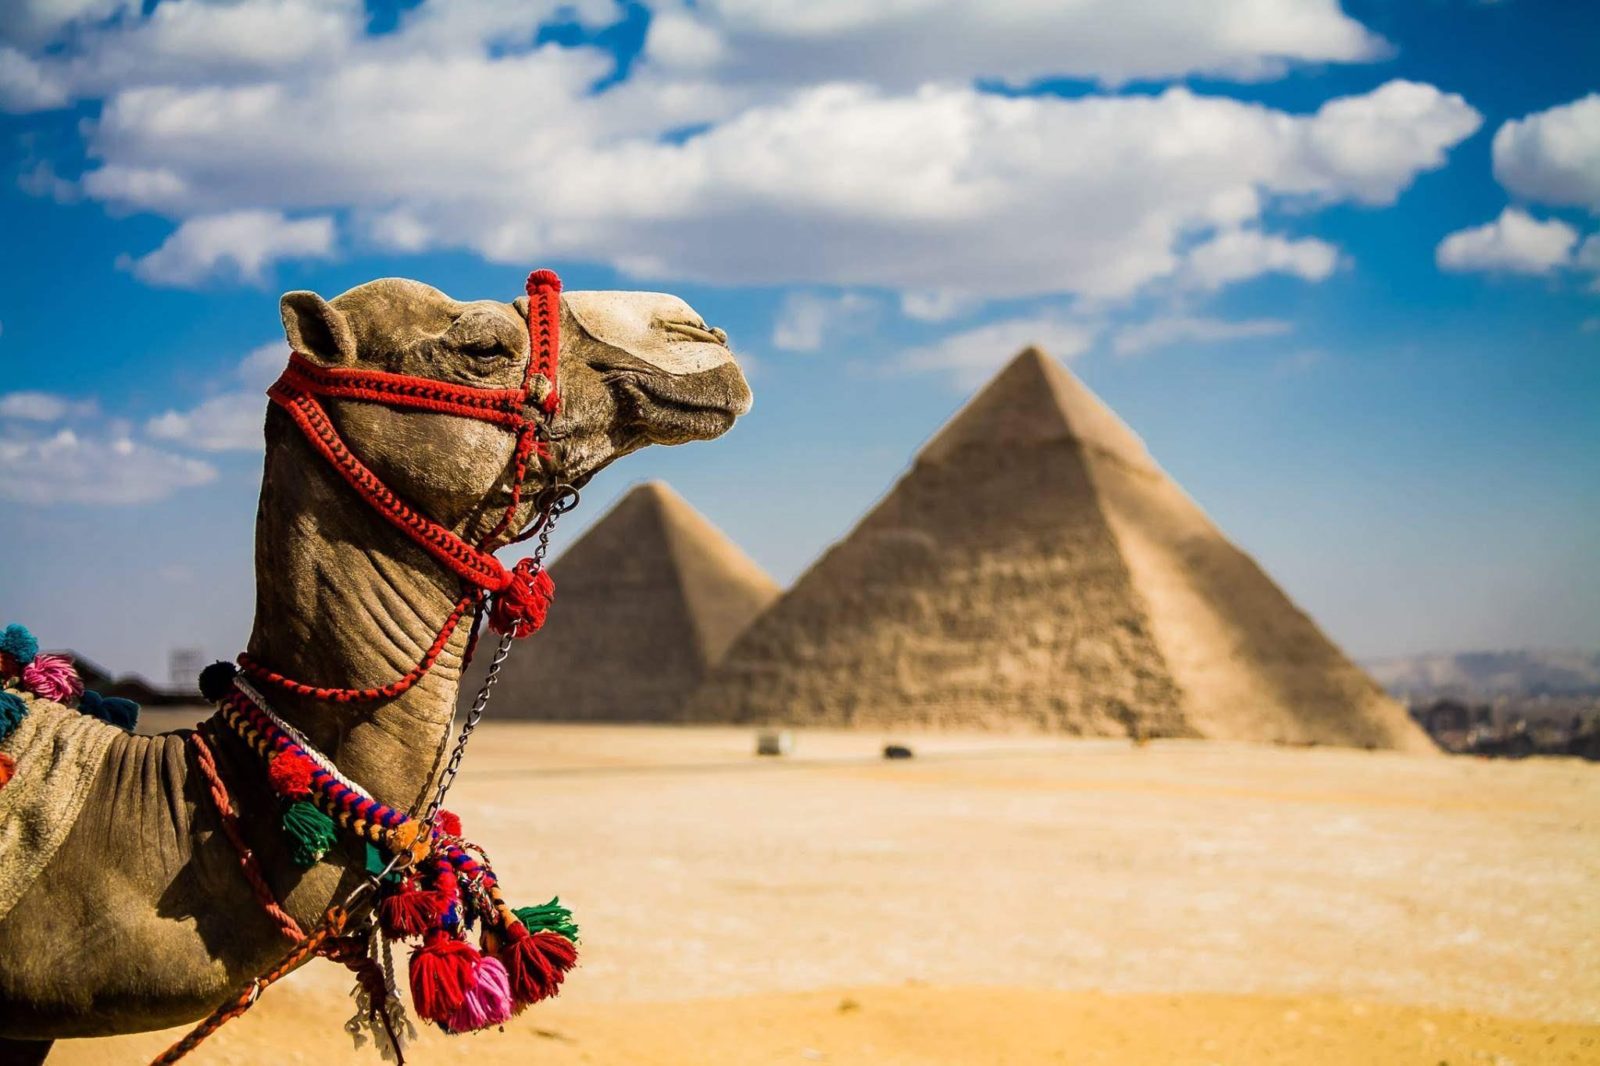 недорогие туры в Египет